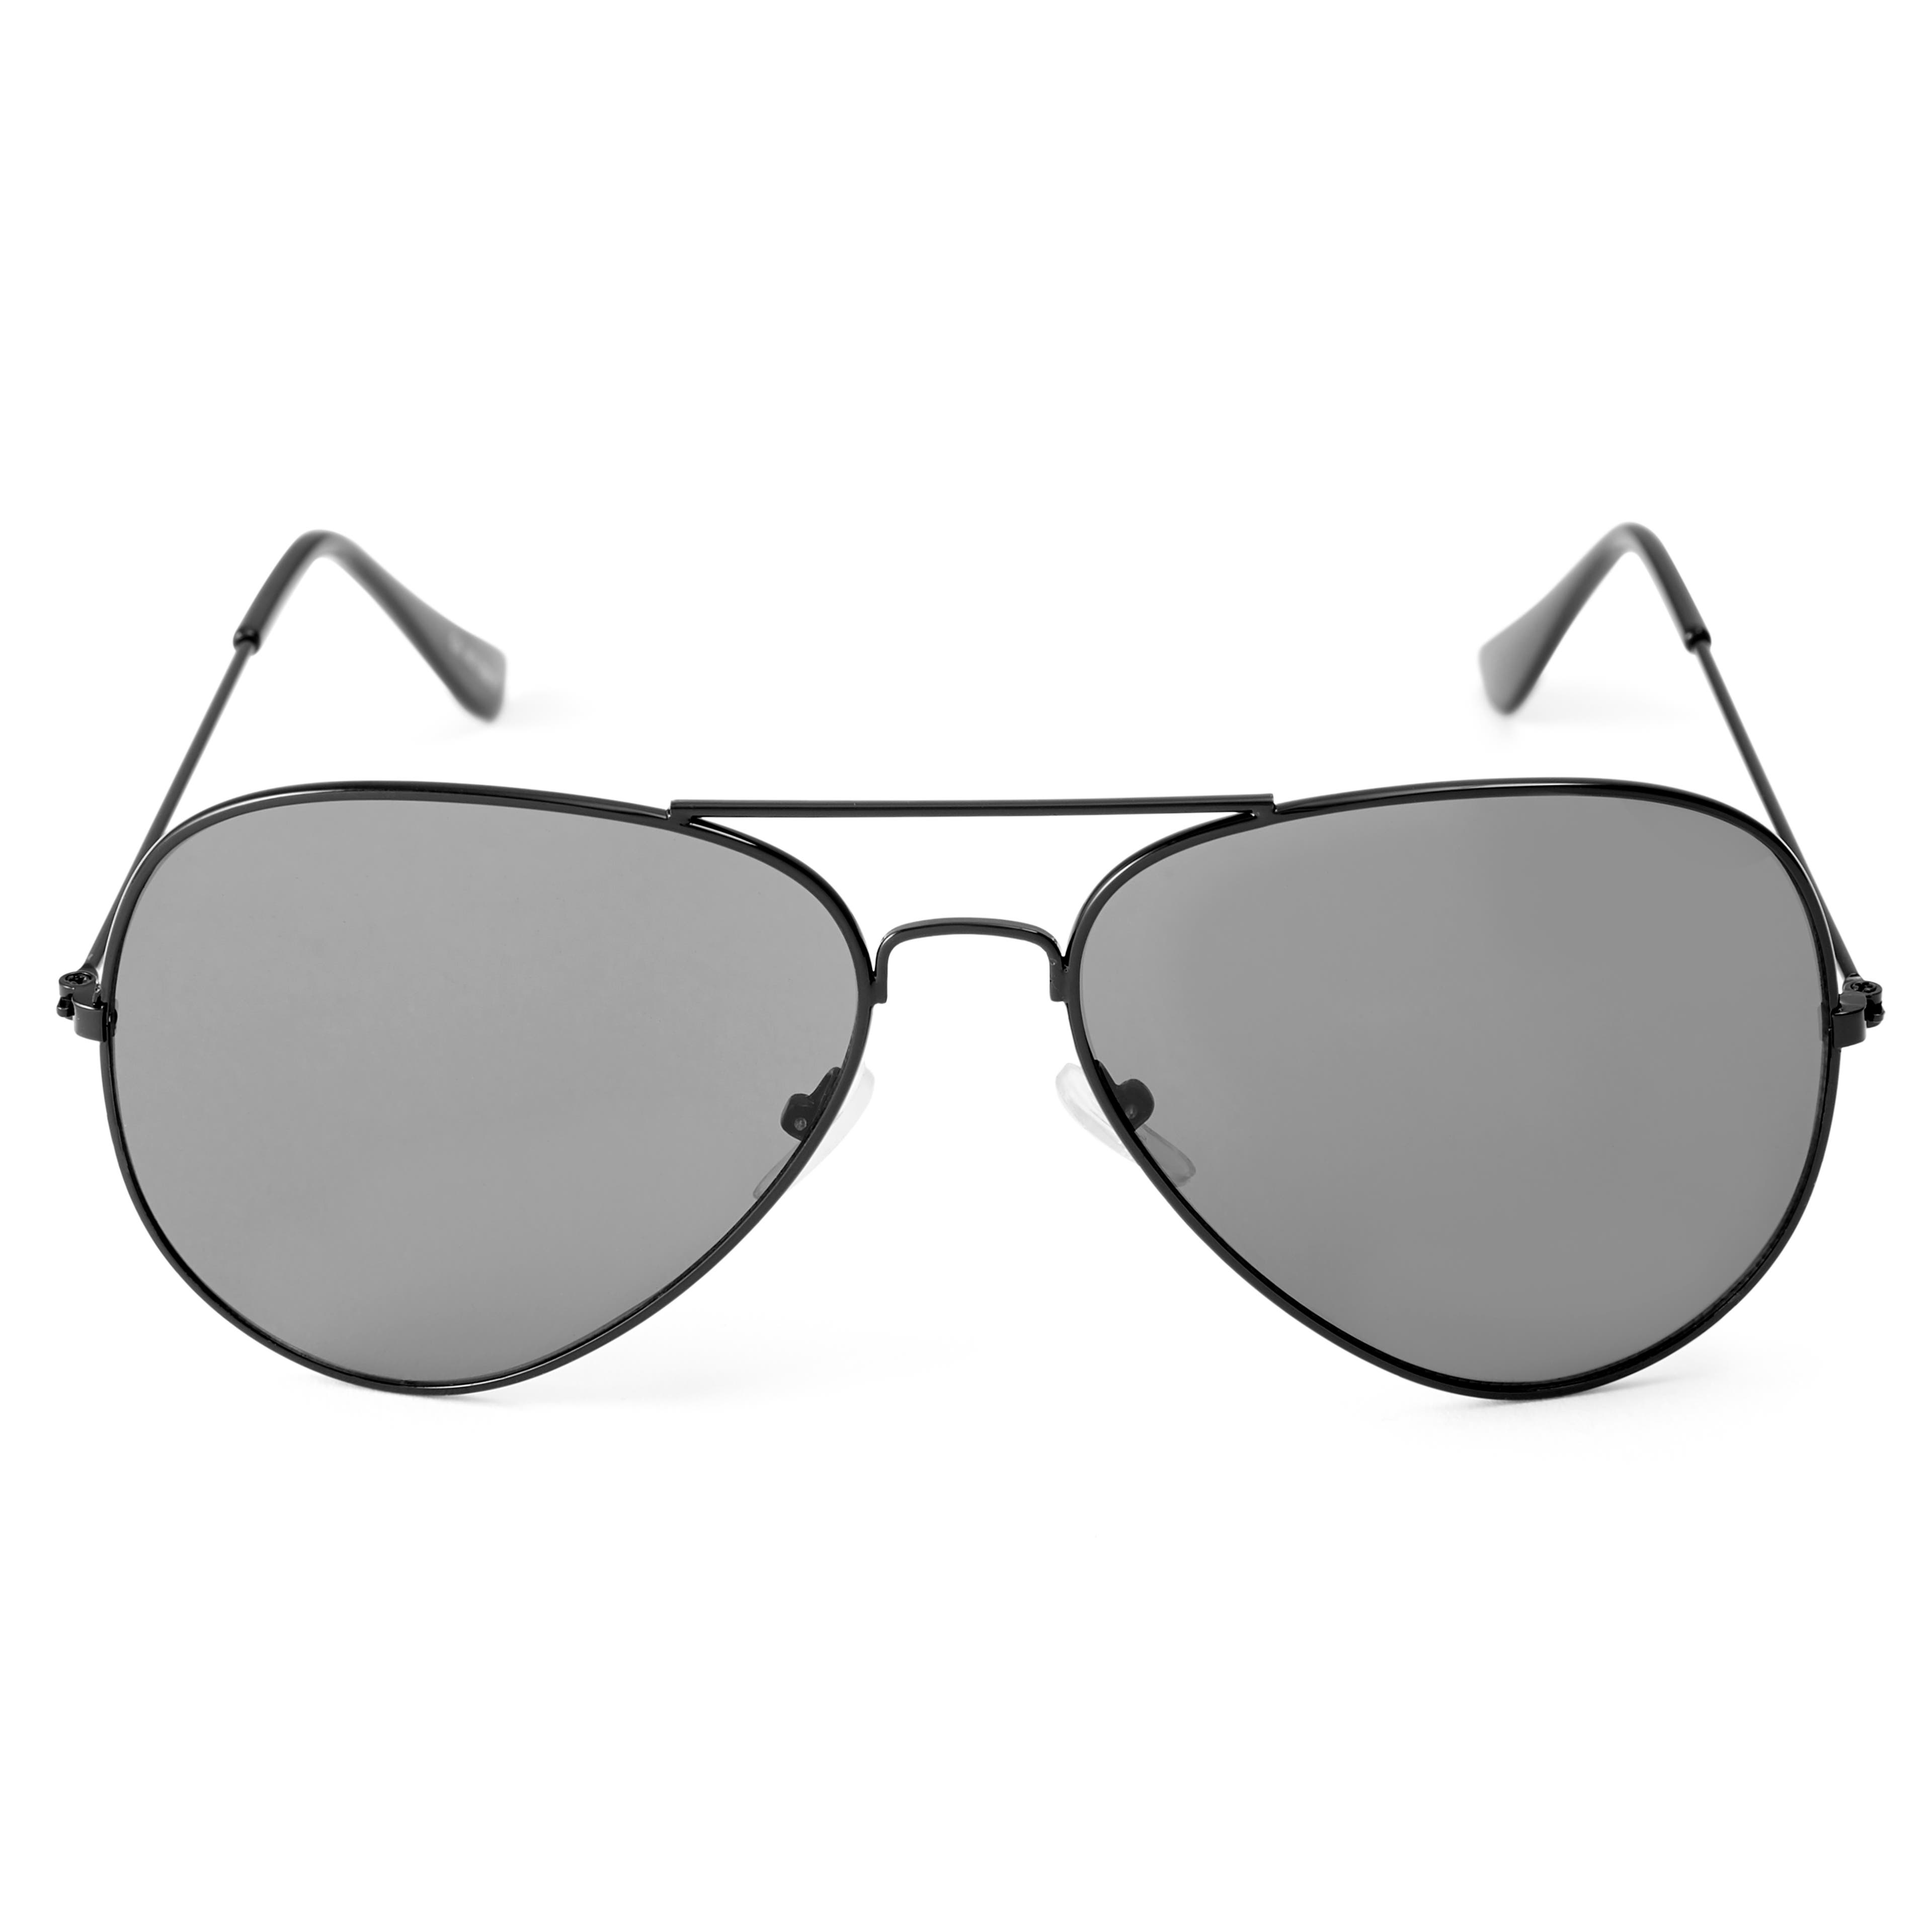 Blanche Michelle High Quality Men's Pilot Sunglasses  Pilot sunglasses,  Aviator sunglasses style, Sunglasses